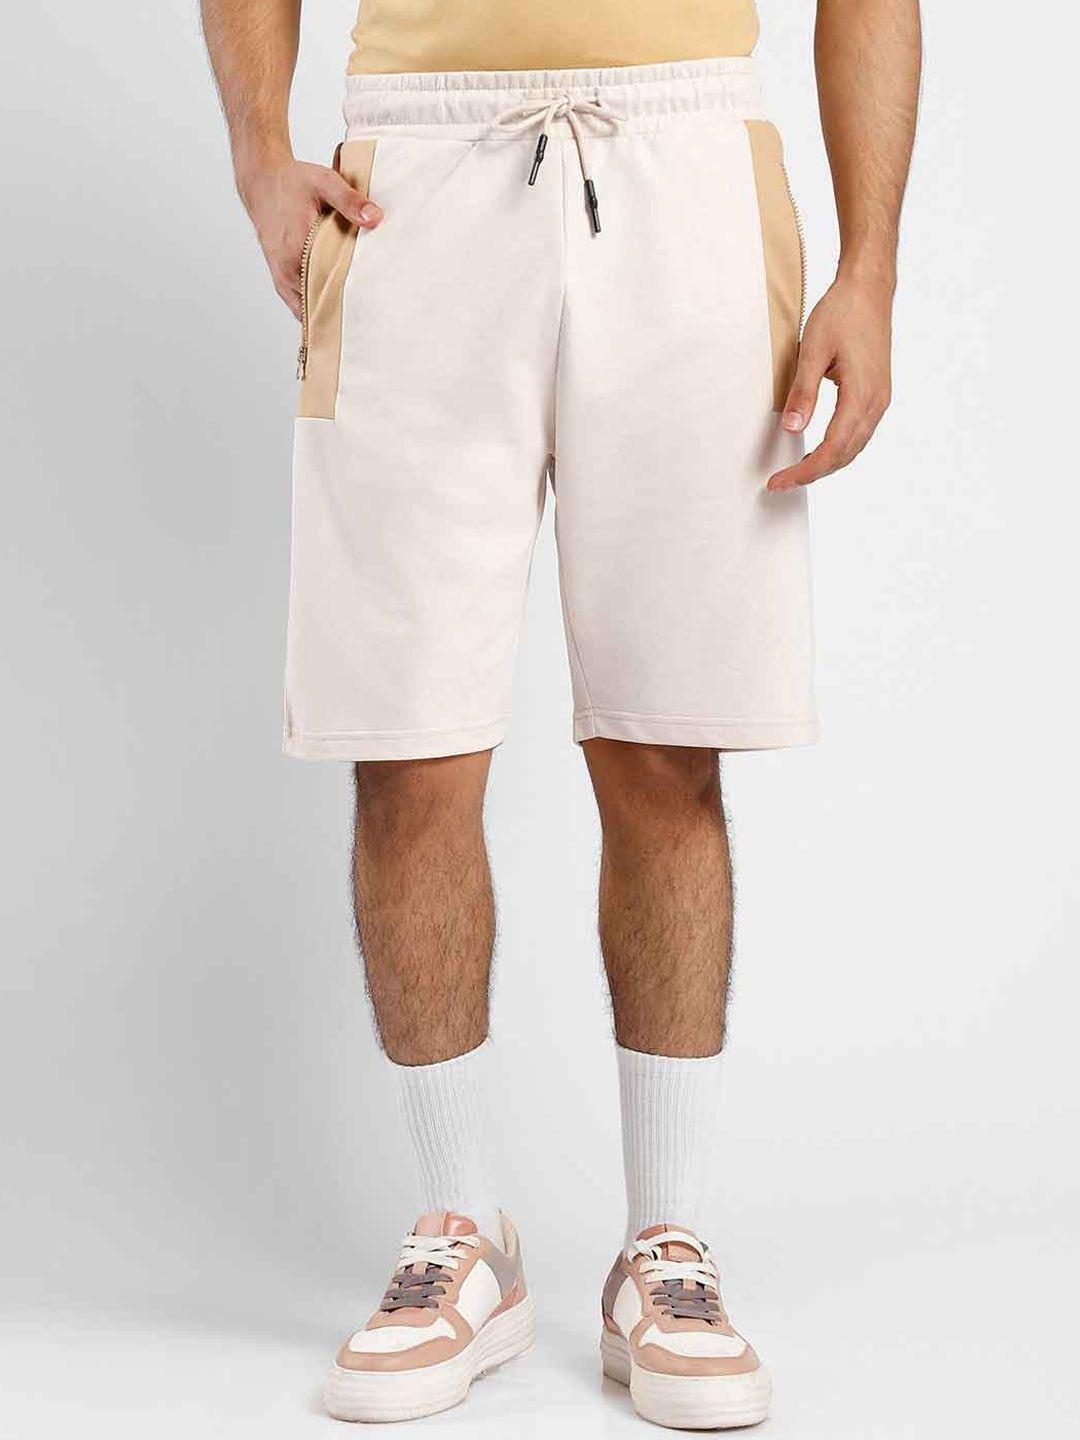 nobero-men-beige-shorts